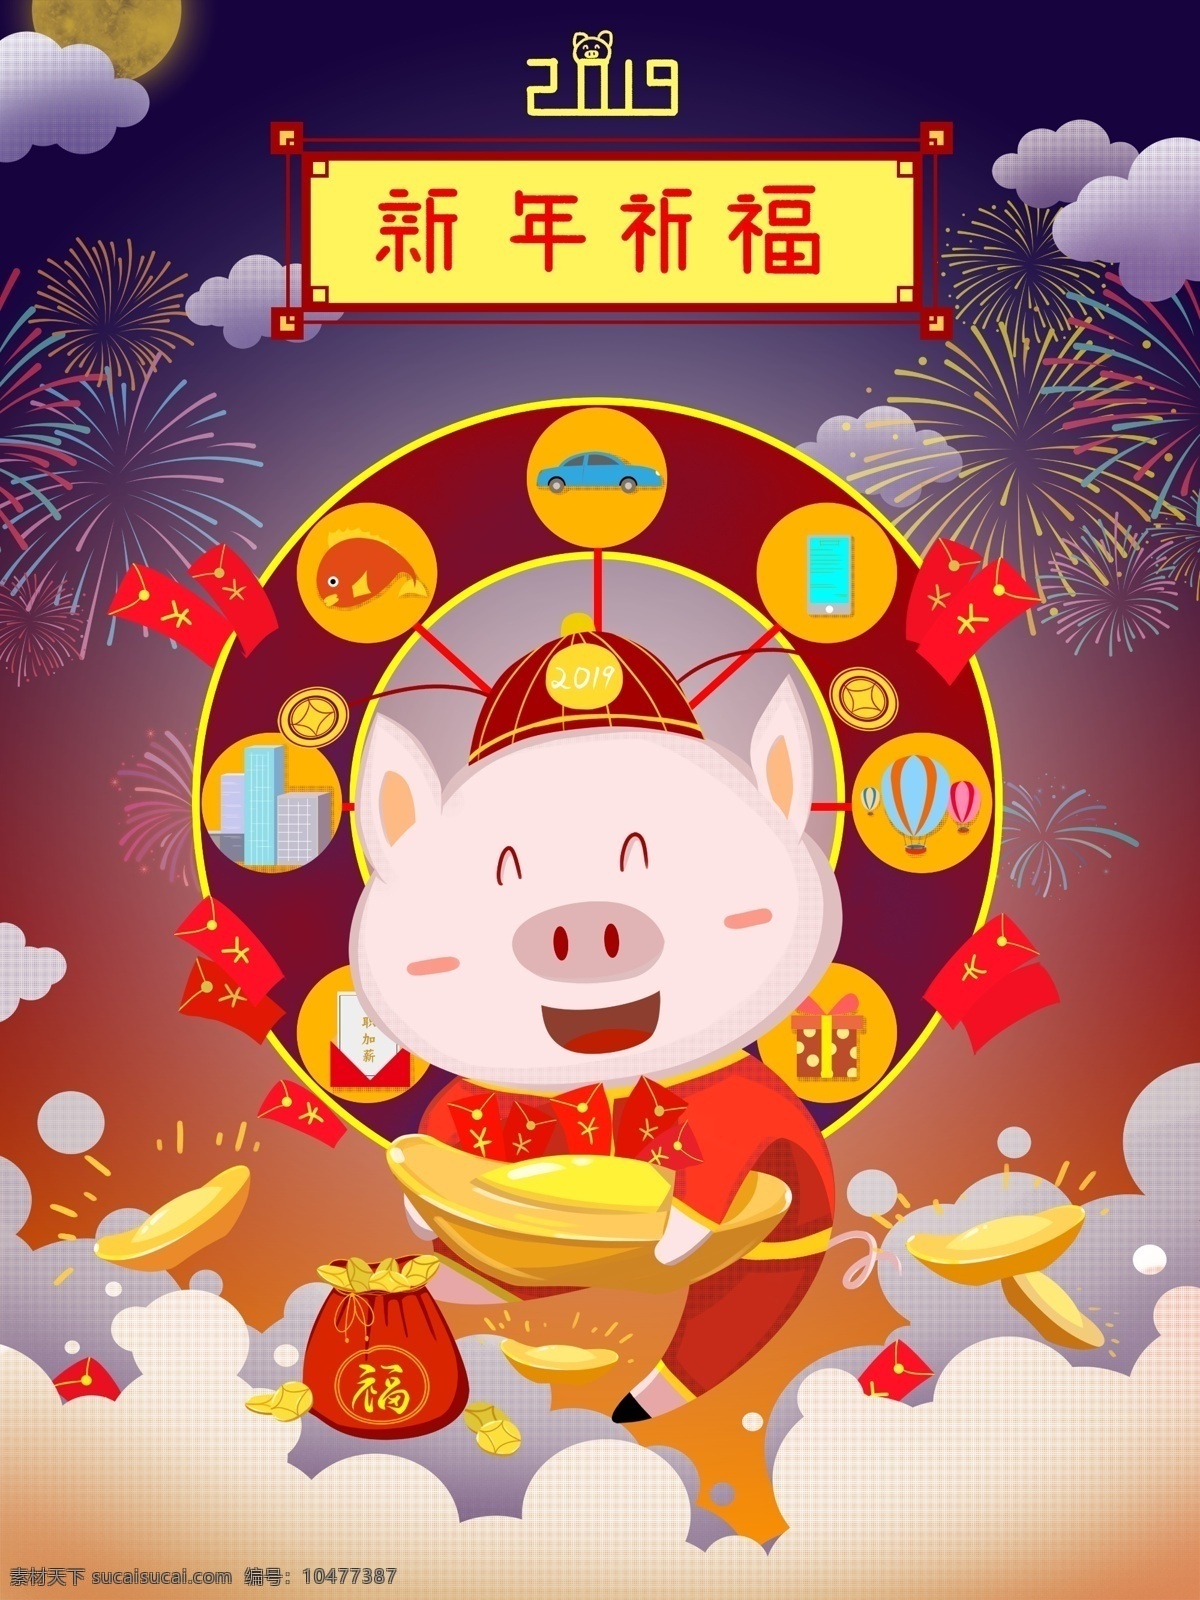 2019 新年 好运 祈福 猪年 原创 插画 庆祝 红包 抽签 万事如意 心想事成 升职加薪